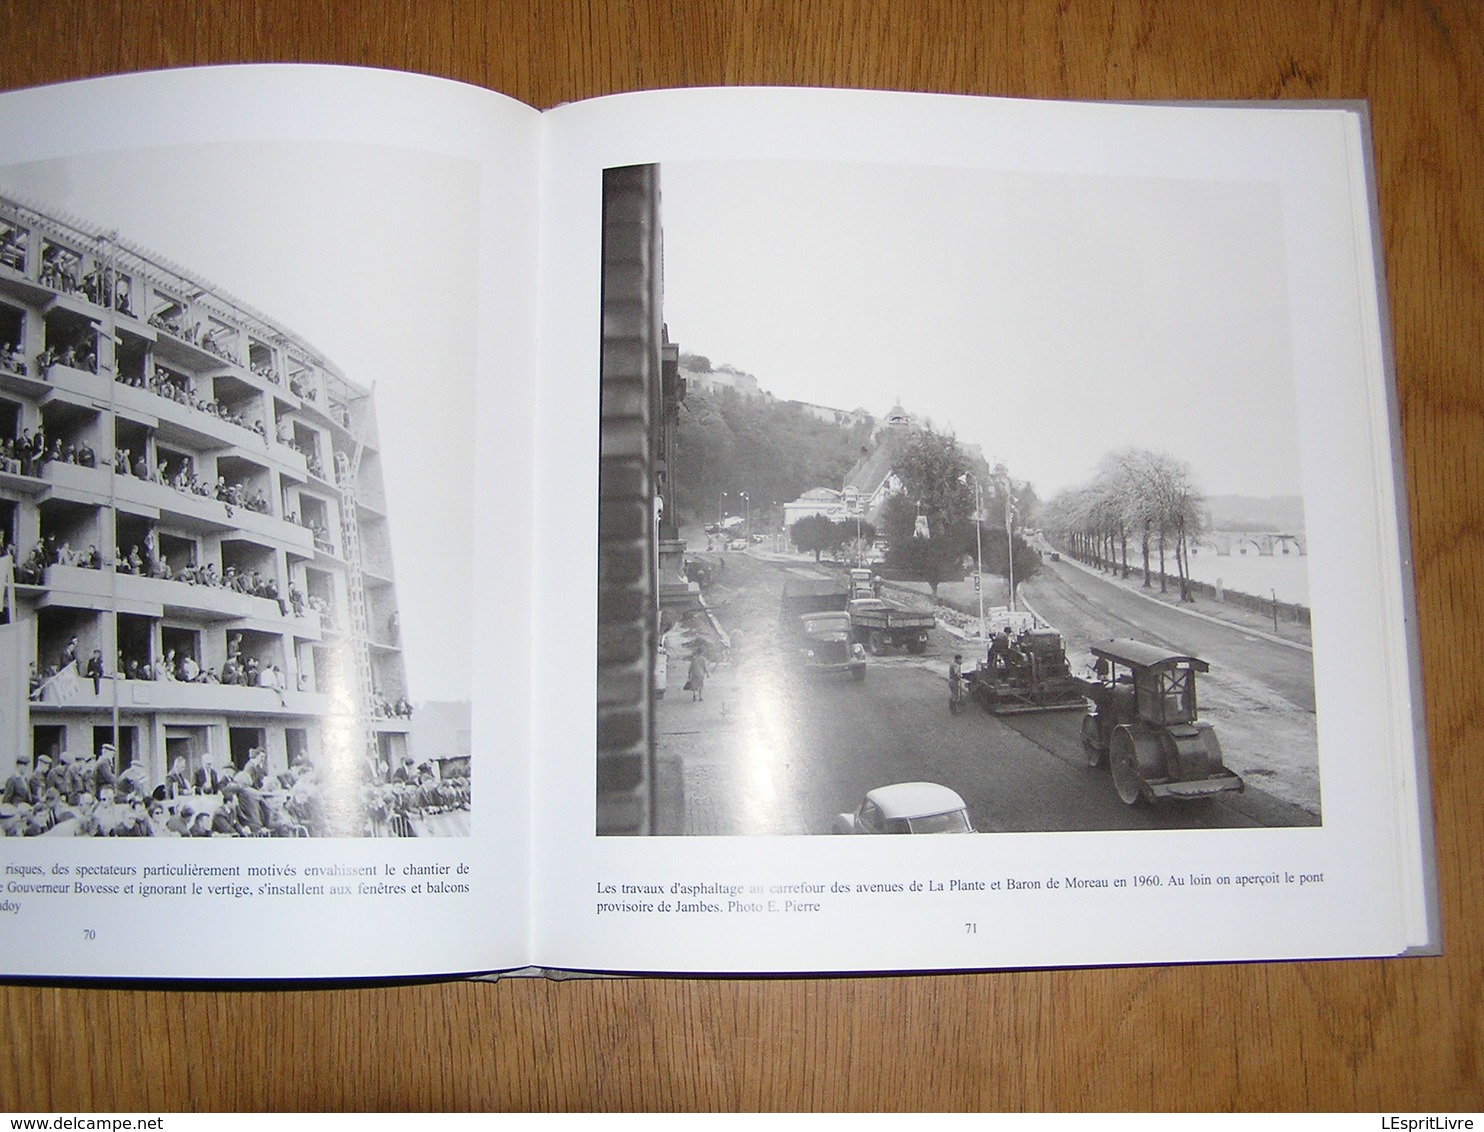 NAMUR Années 1960 Archives Photographiques Namuroises Tome 5 Régionalisme Photographies Meuse Citadelle Fêtes Commerce